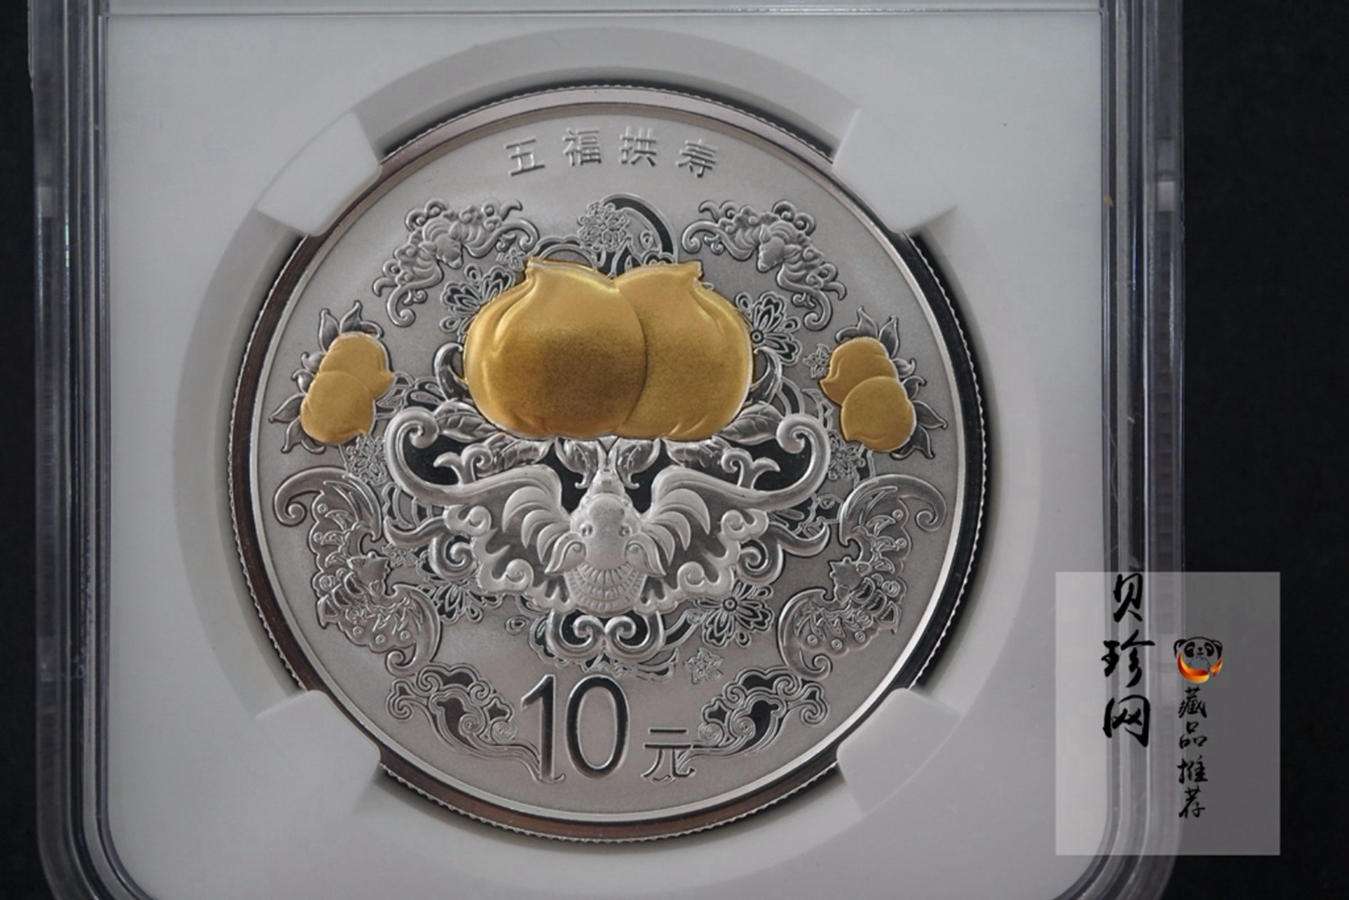 【150305】2015年吉祥文化-五福拱寿1盎司精制银币